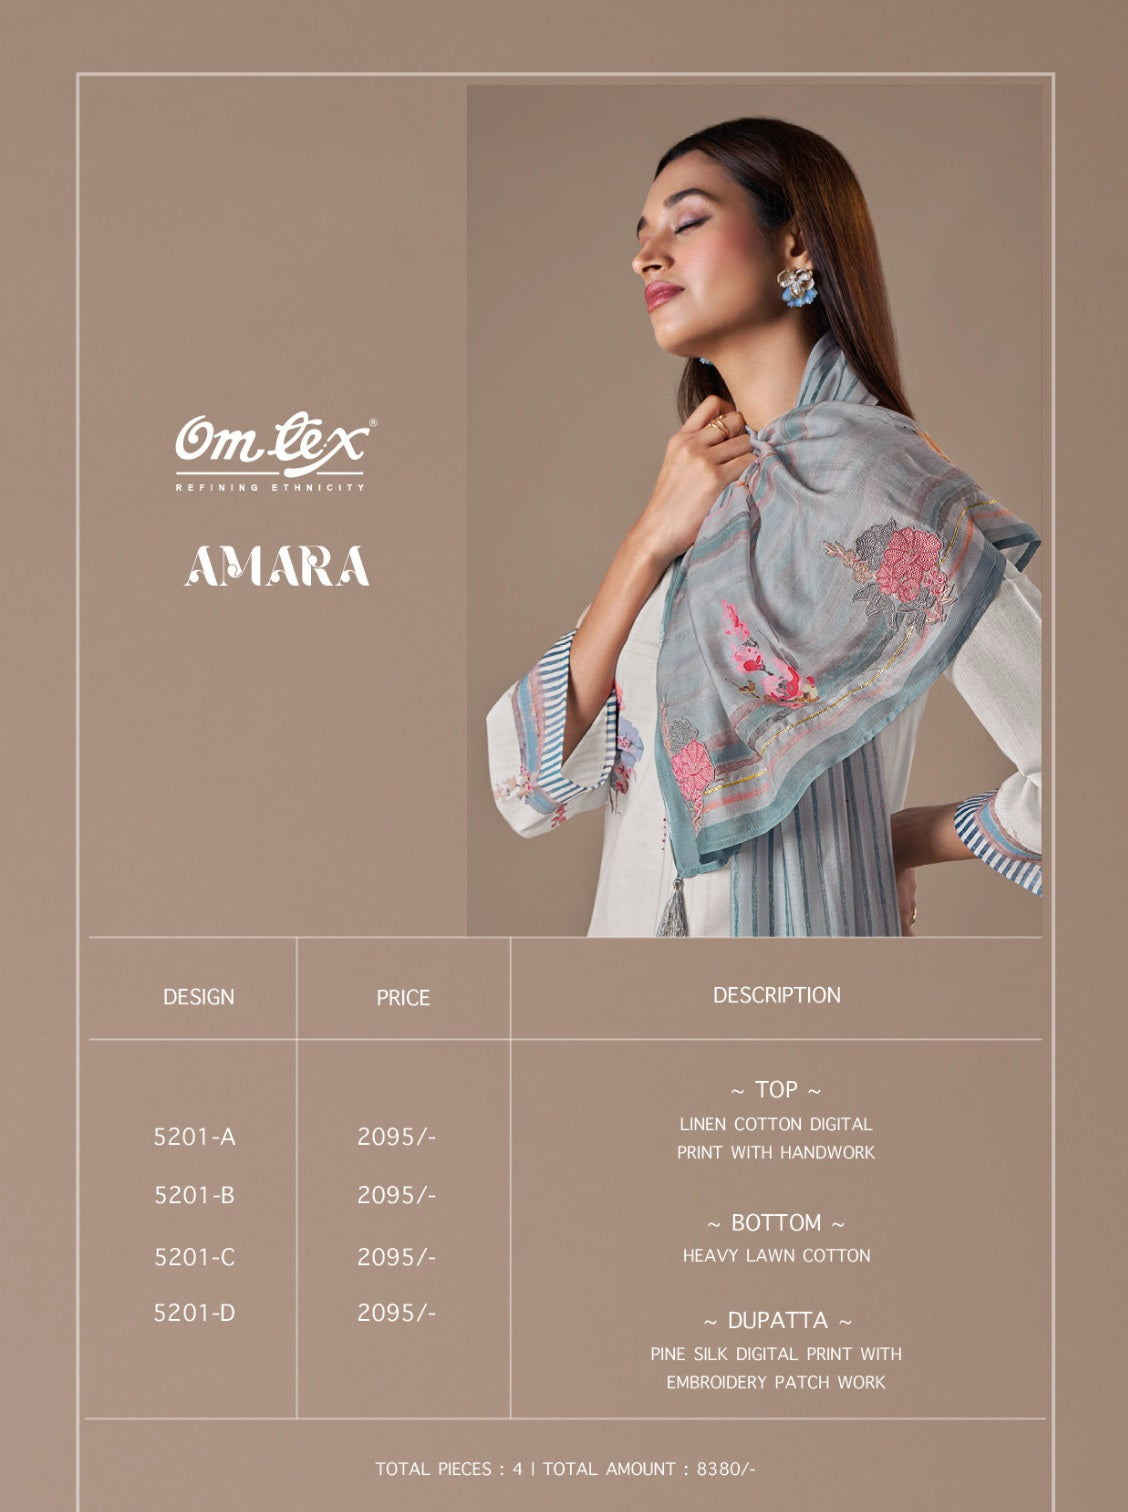 Amara Omtex Linen Cotton Pant Style Suits